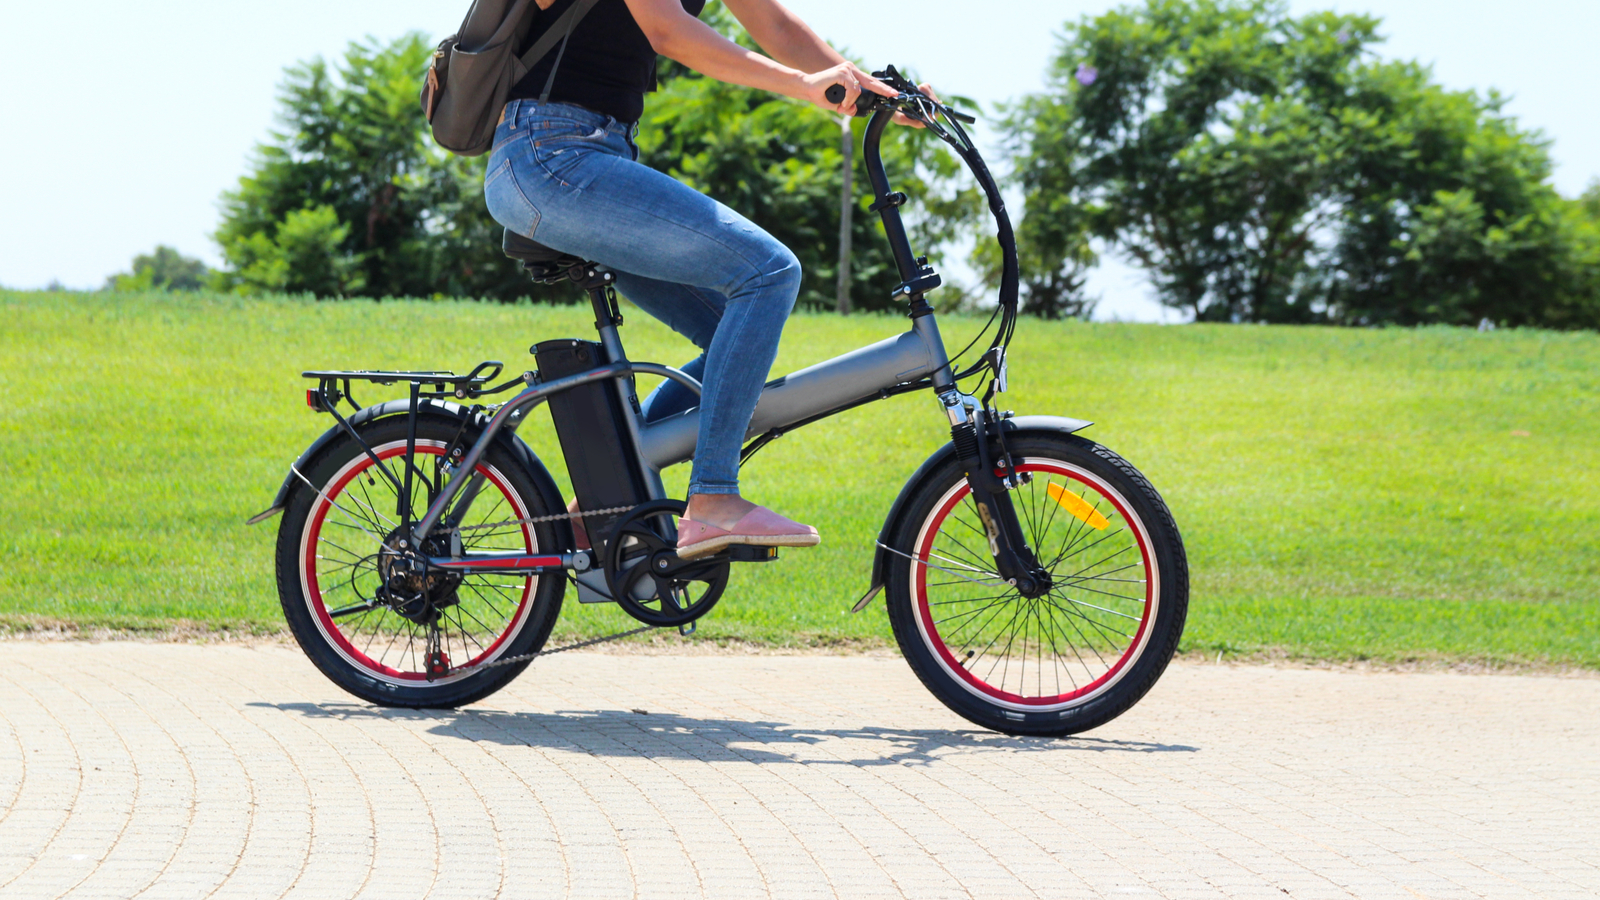 Les vélos électriques feraient faire autant de sport que les vélos traditionnels